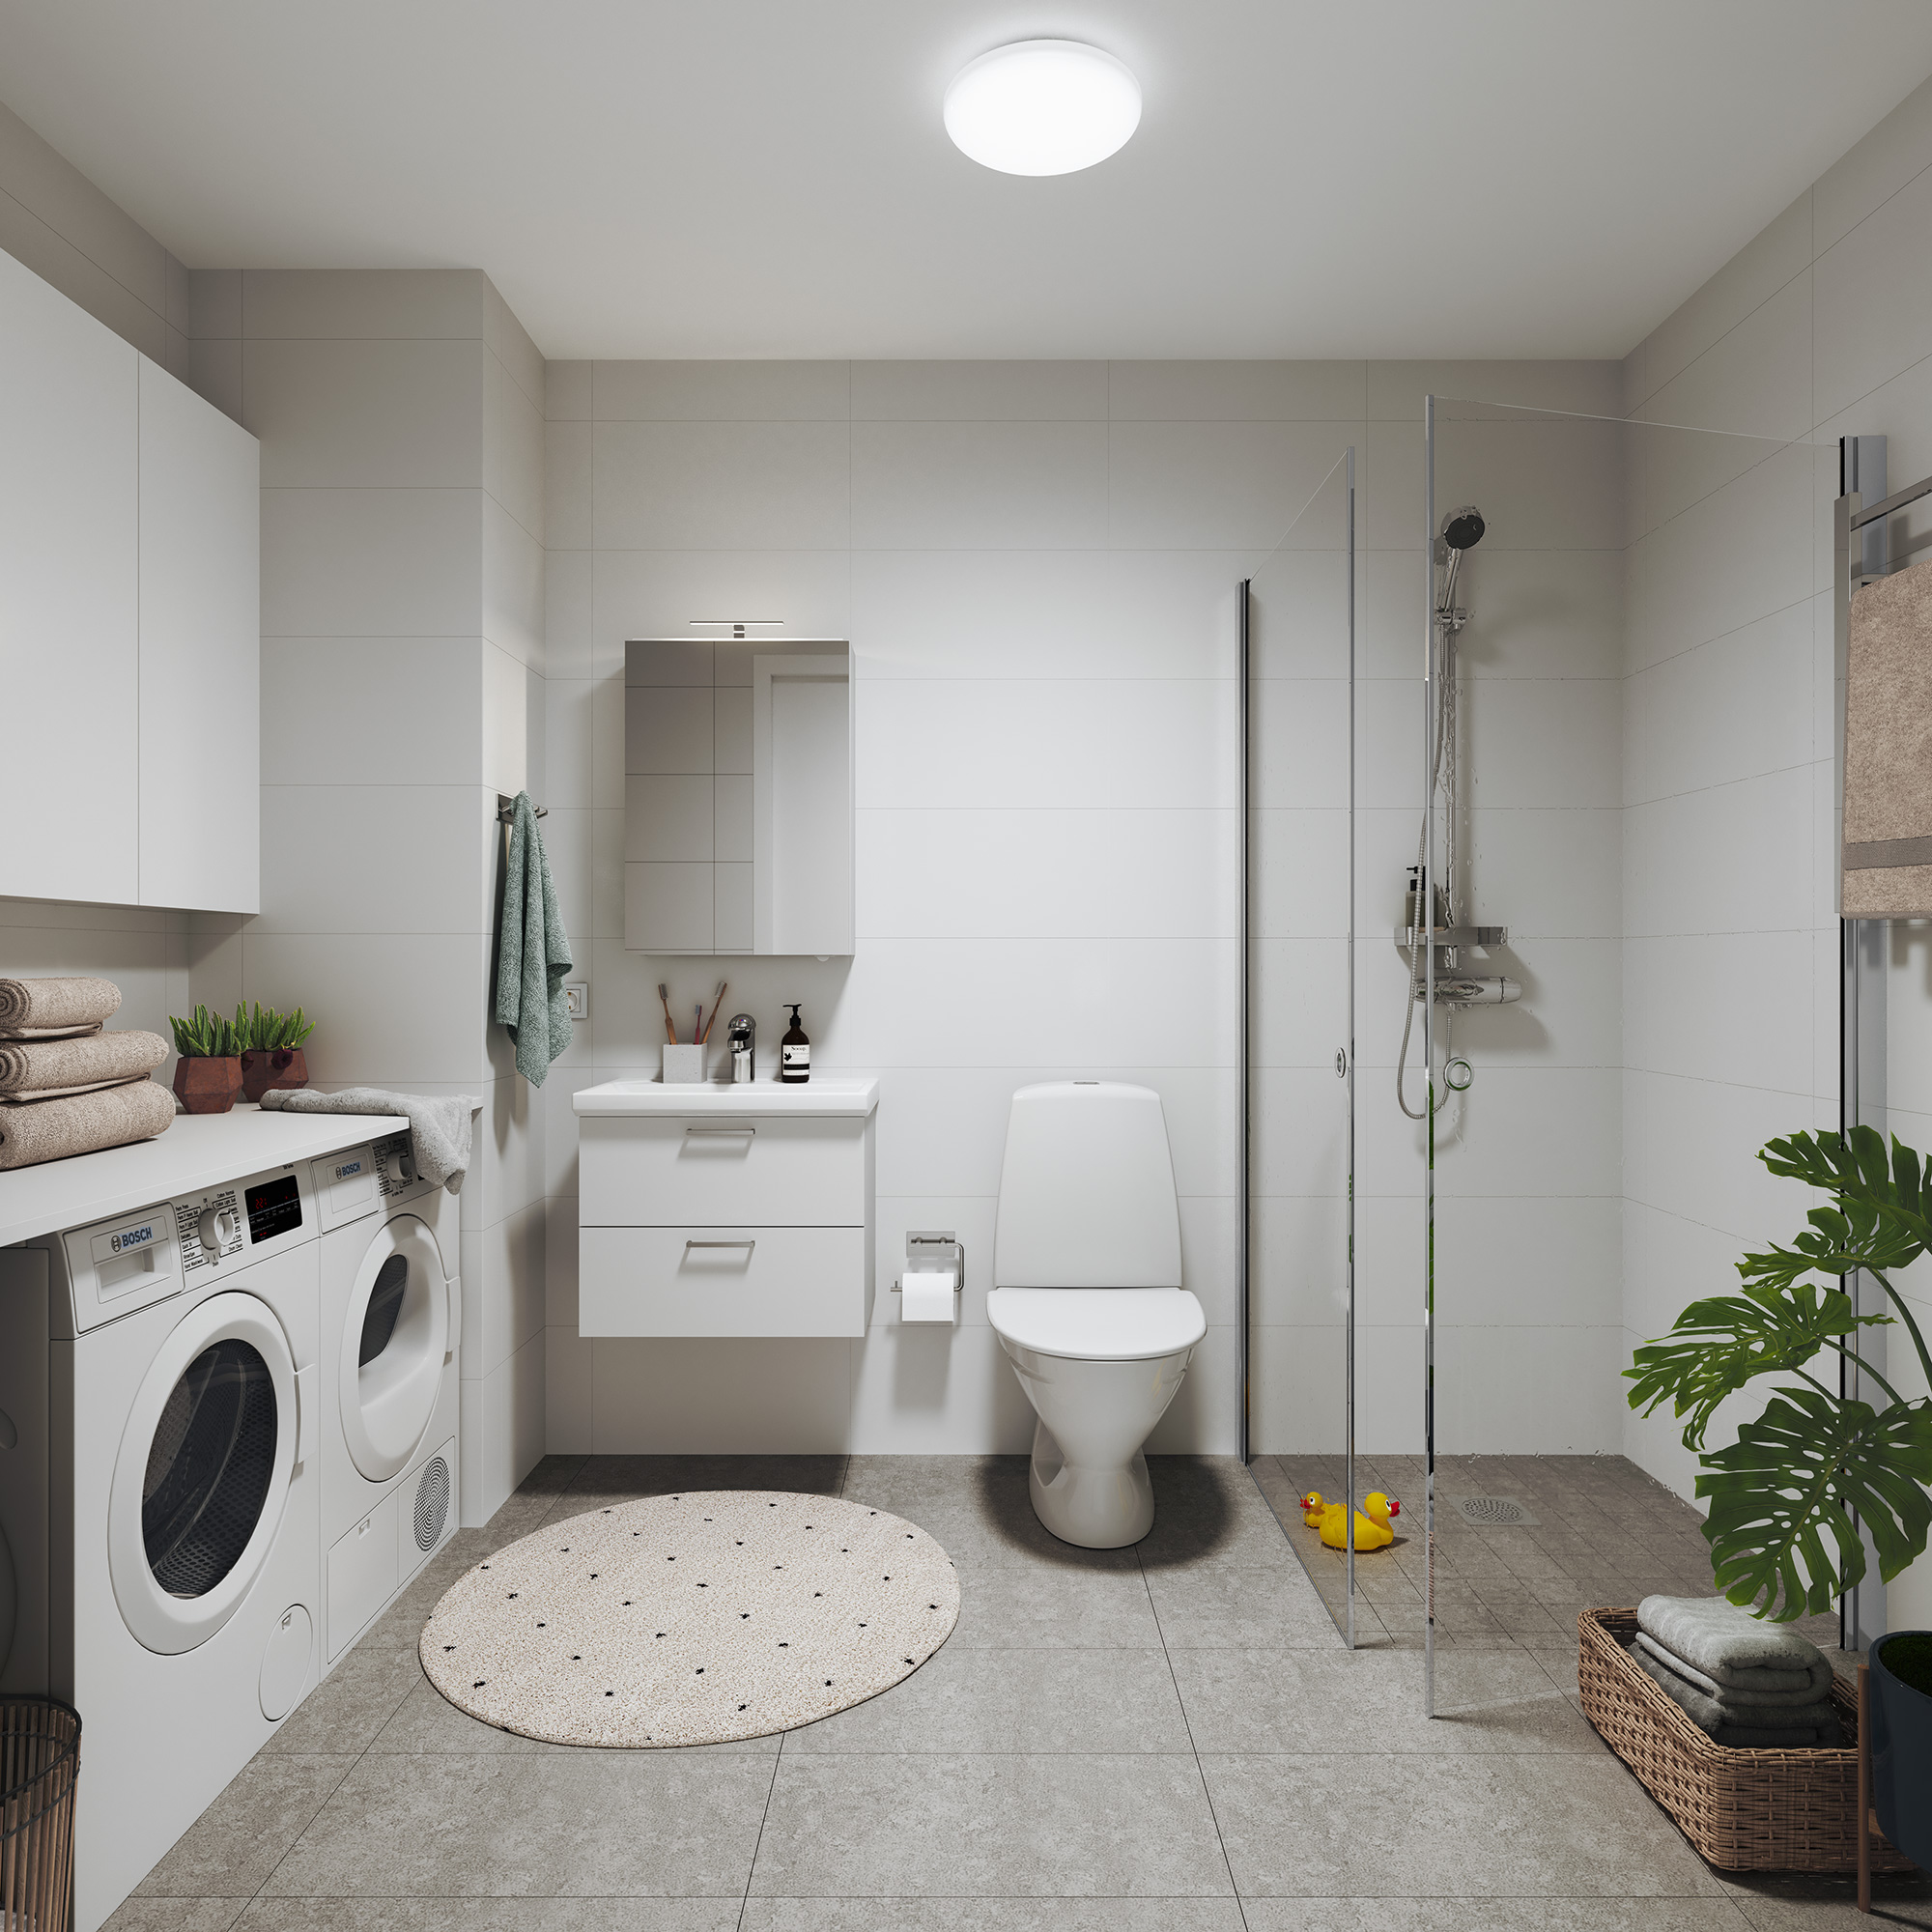 I Spinas större lägenheter är tvättmaskin och torktumlare placerade på golvet med extra skåp ovanför. Här blir morgonrutinen enkel att genomföra.